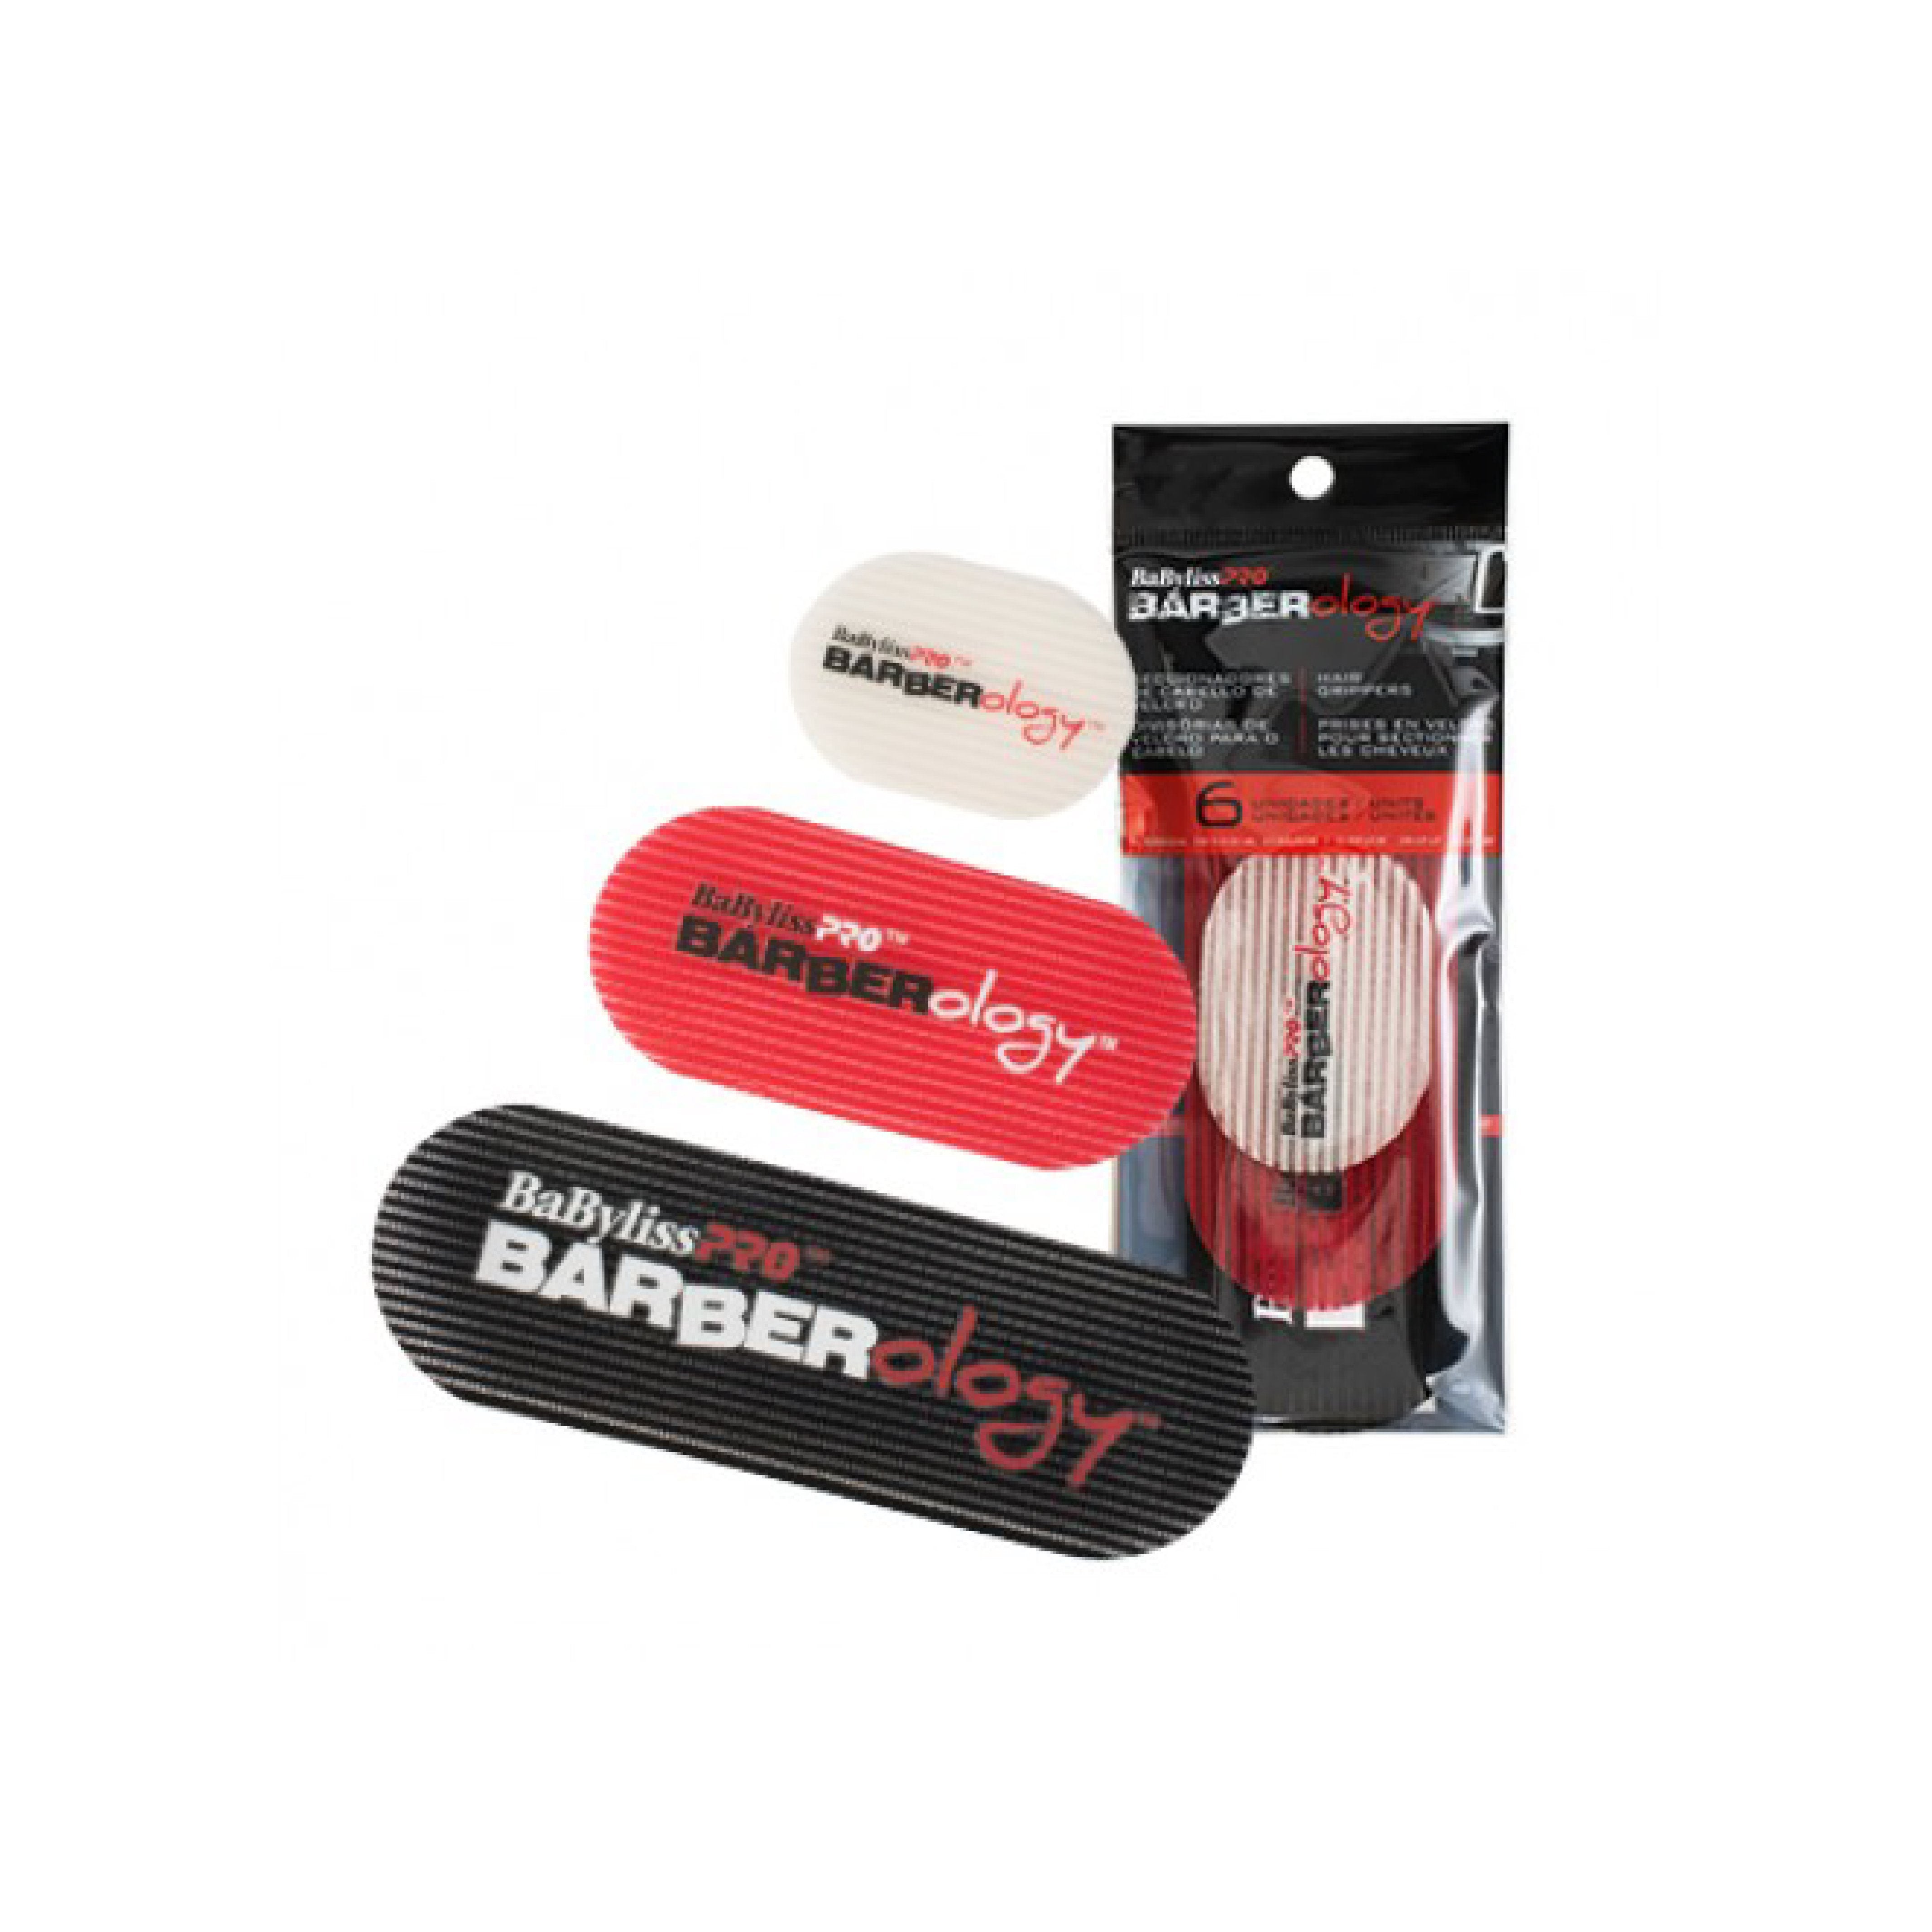 Babyliss Pro Barberology Hair Grippers - 6 piece Set - Barber Bazaar